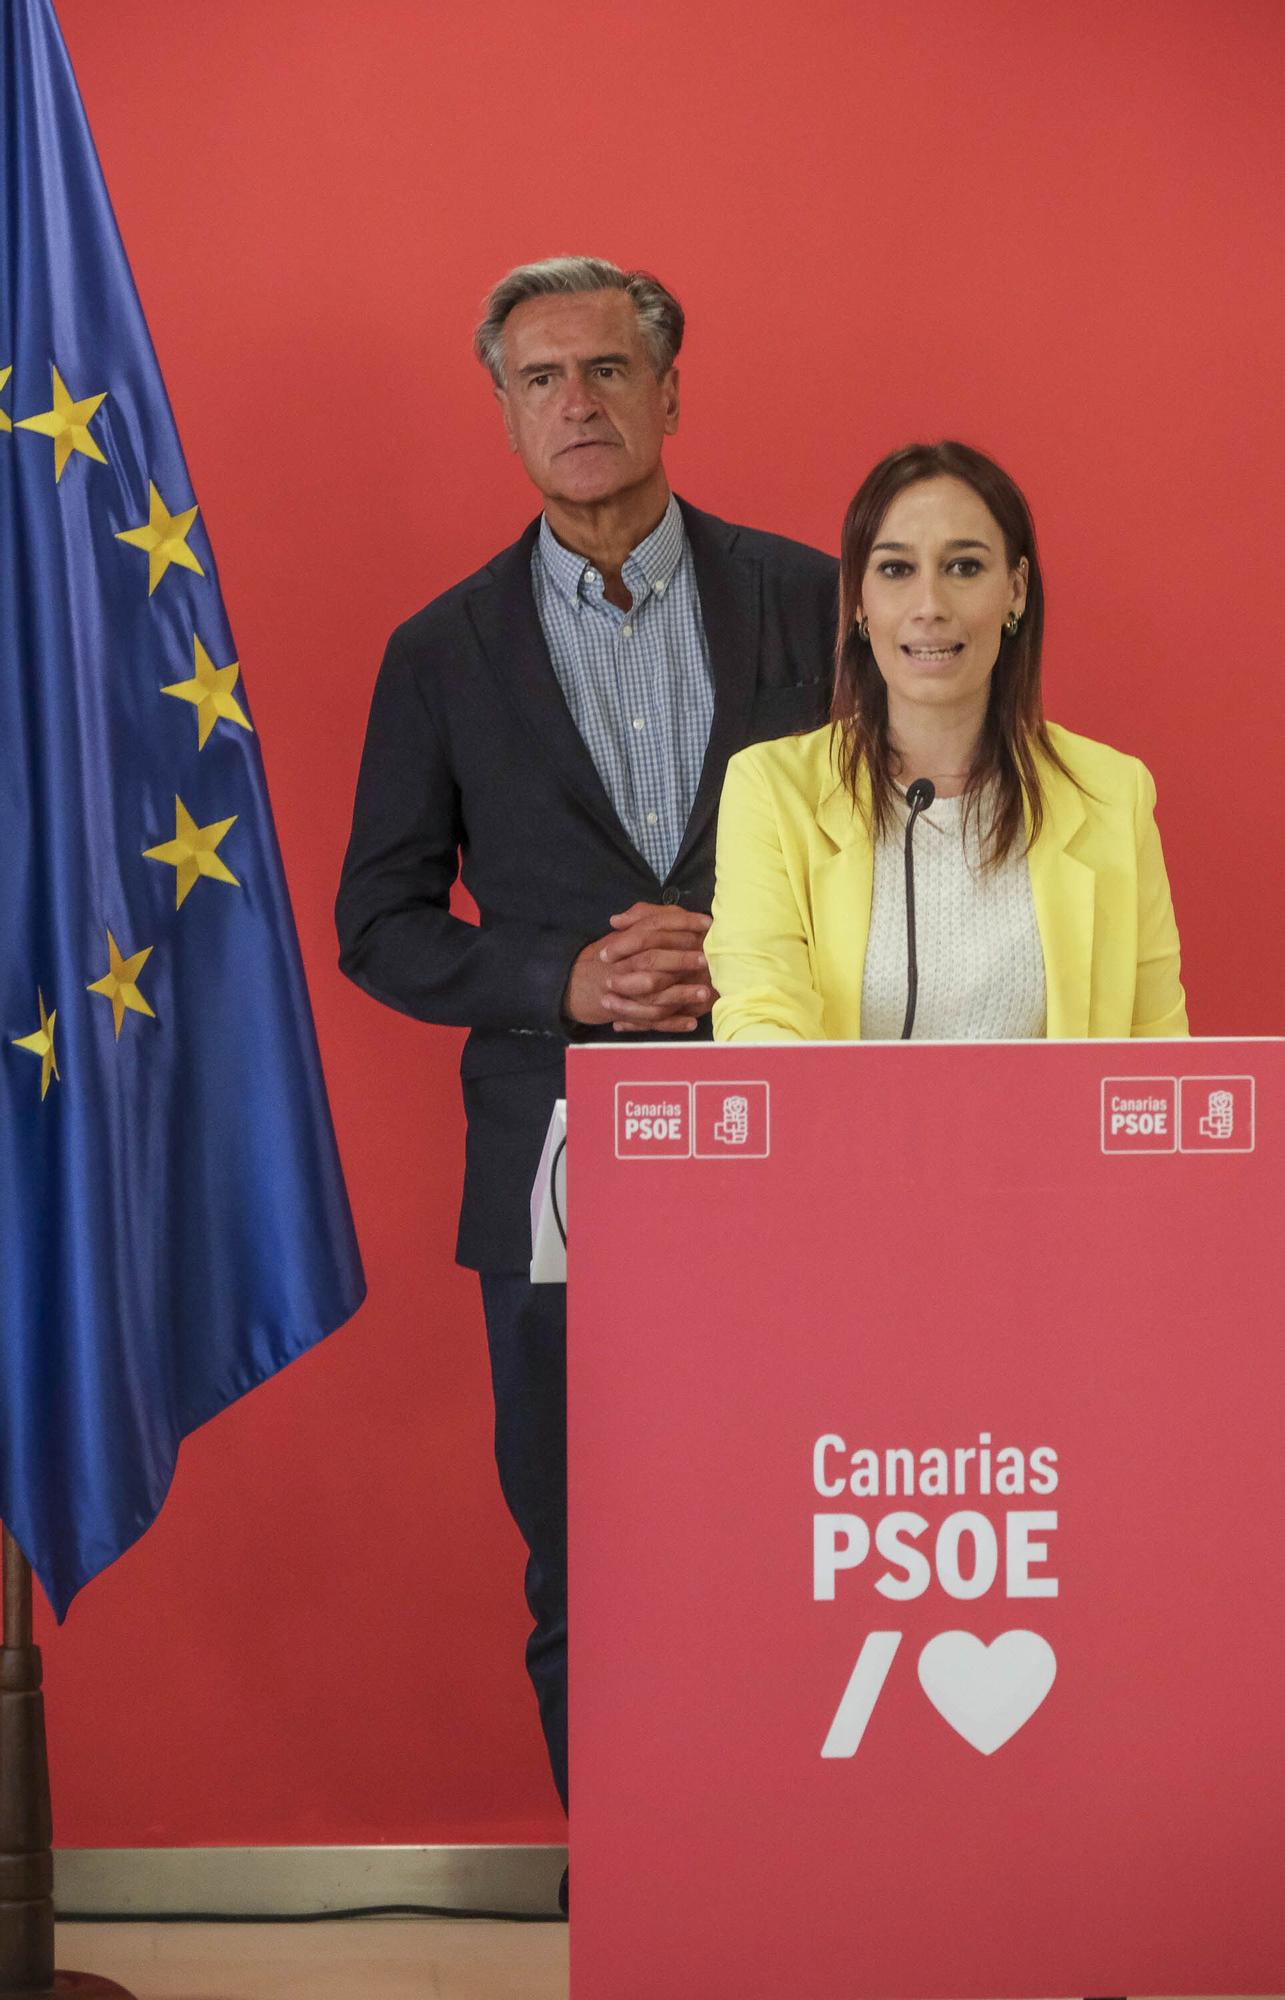 Encuentro informativo con el candidato del PSOE Canarias a las elecciones europeas, Juan Fernando López Aguilar, en Las Palmas de Gran Canaria.